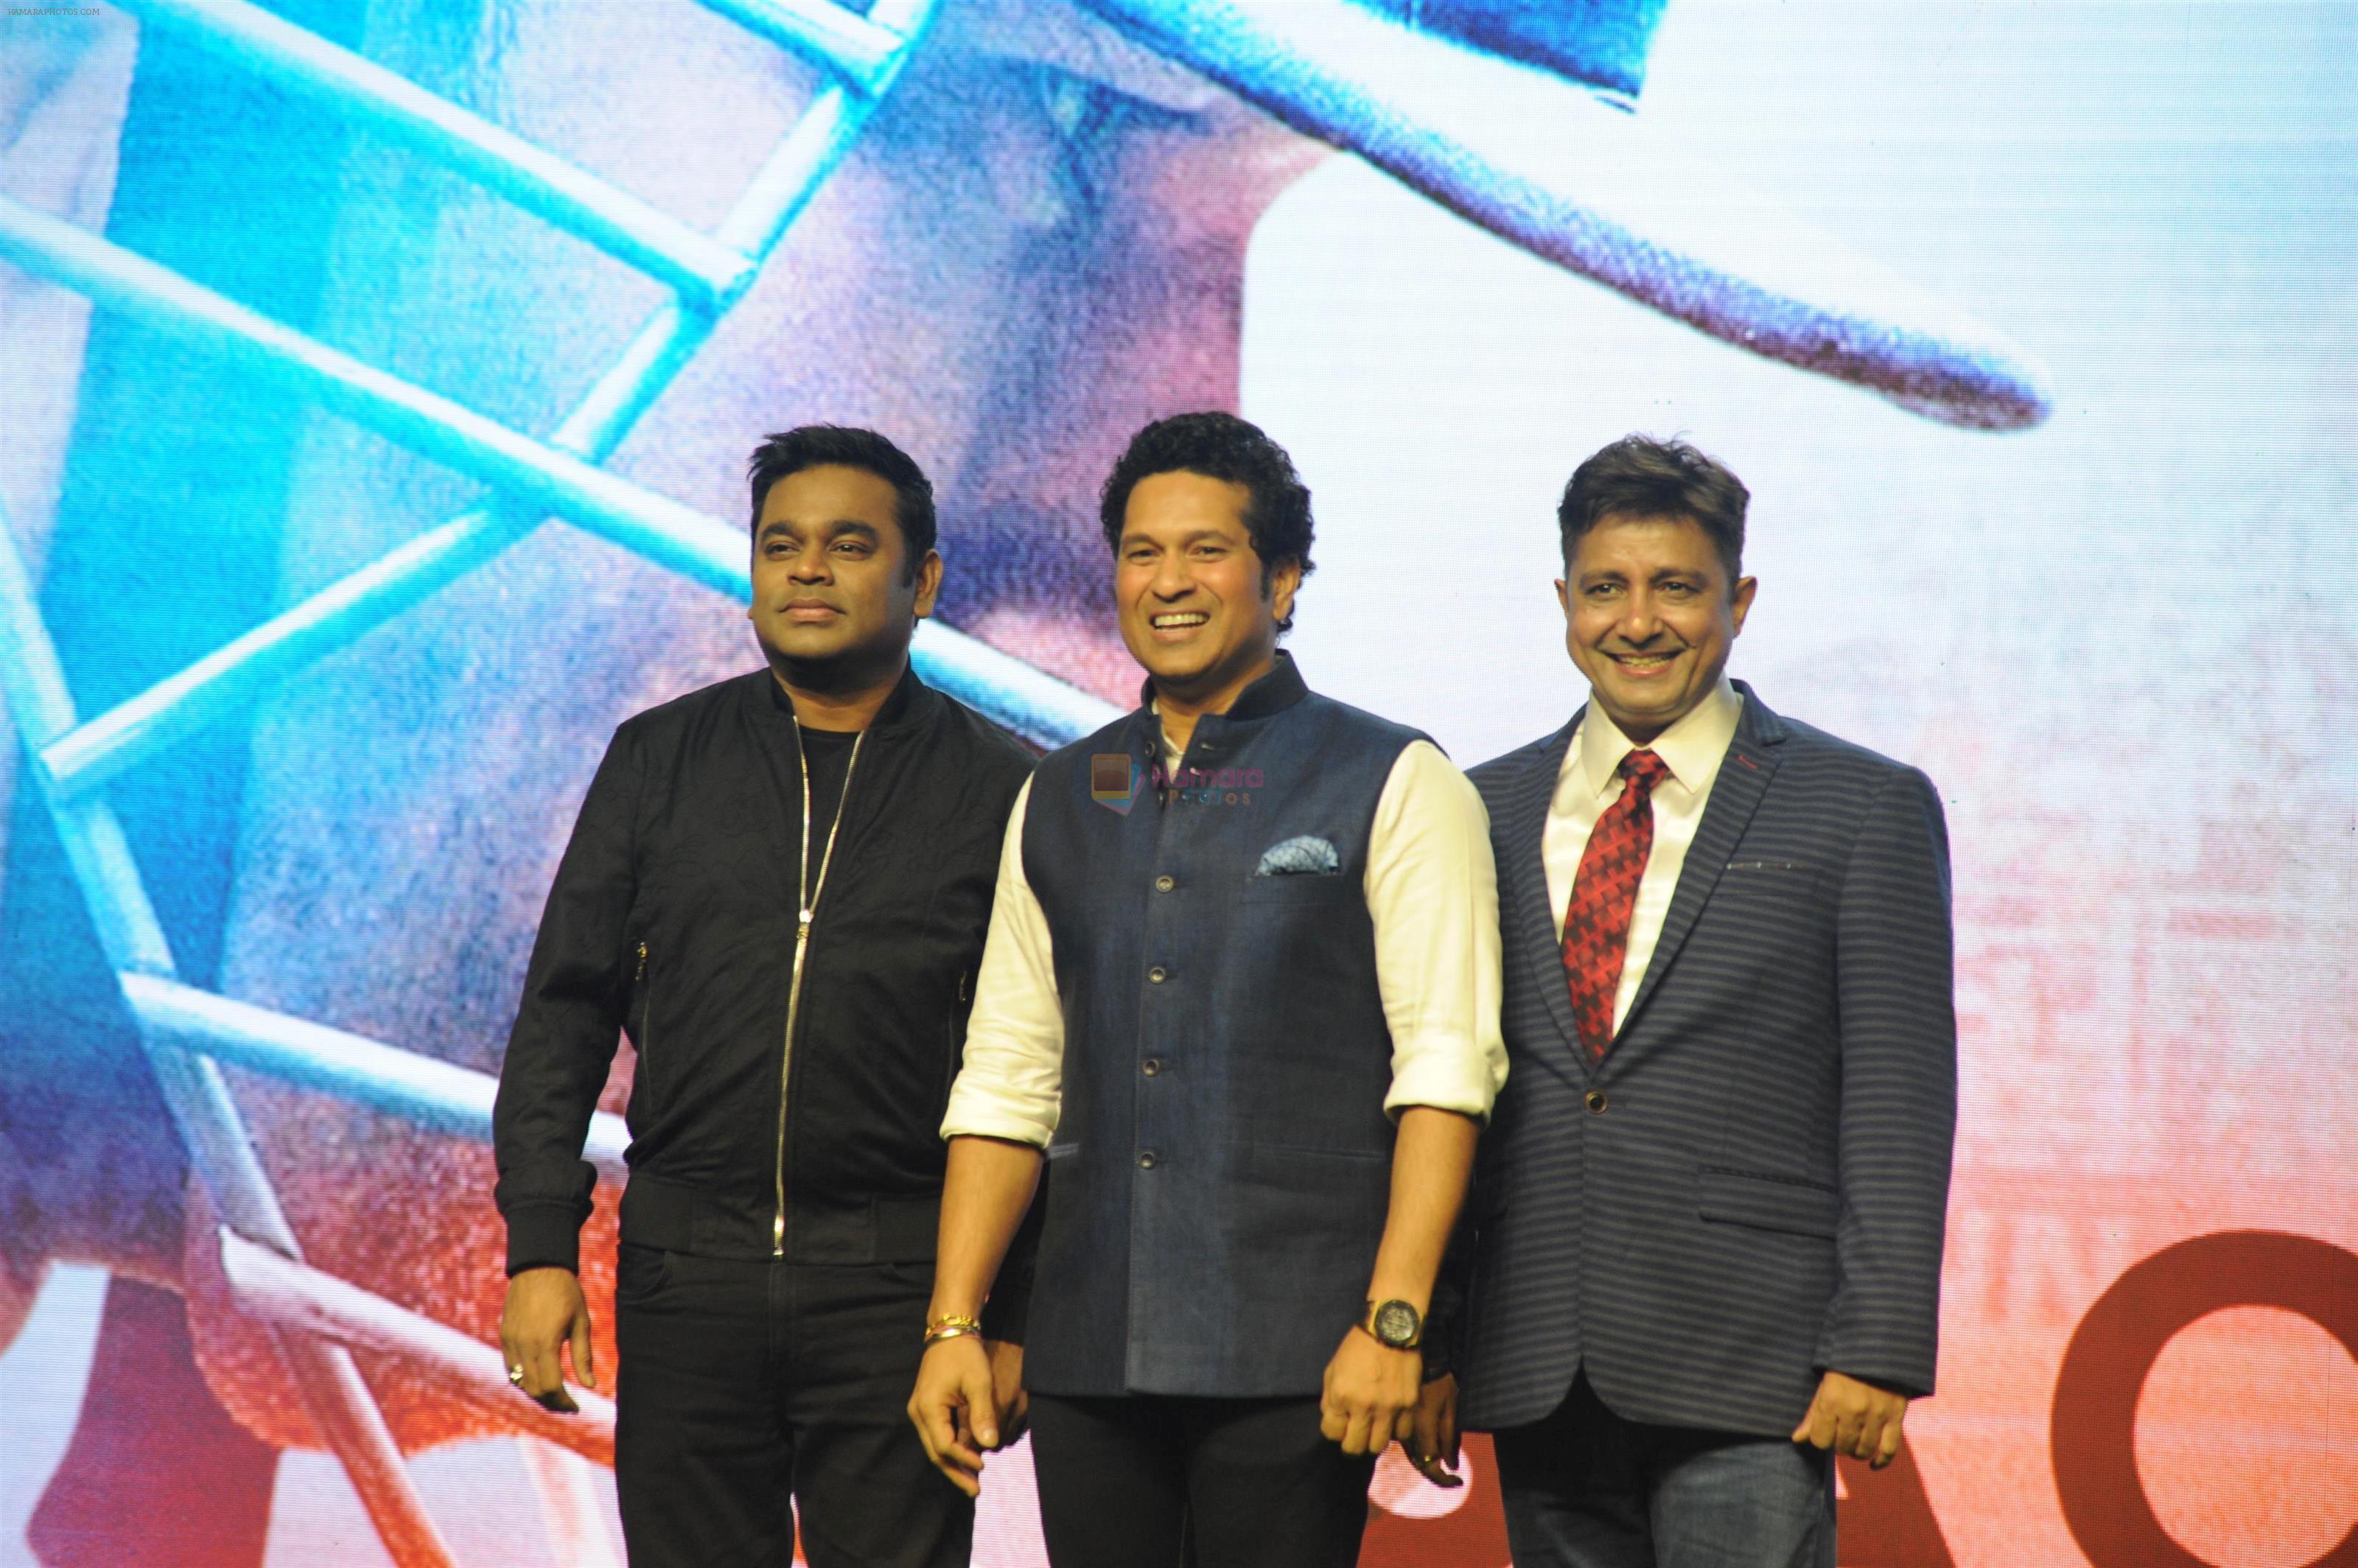 A R Rahman, Sachin Tendulkar, Sukhwinder Singh at the Song launch of Sachin Tendulkar's biographical Film Sachin A Billion Dreams on 10th May 2017